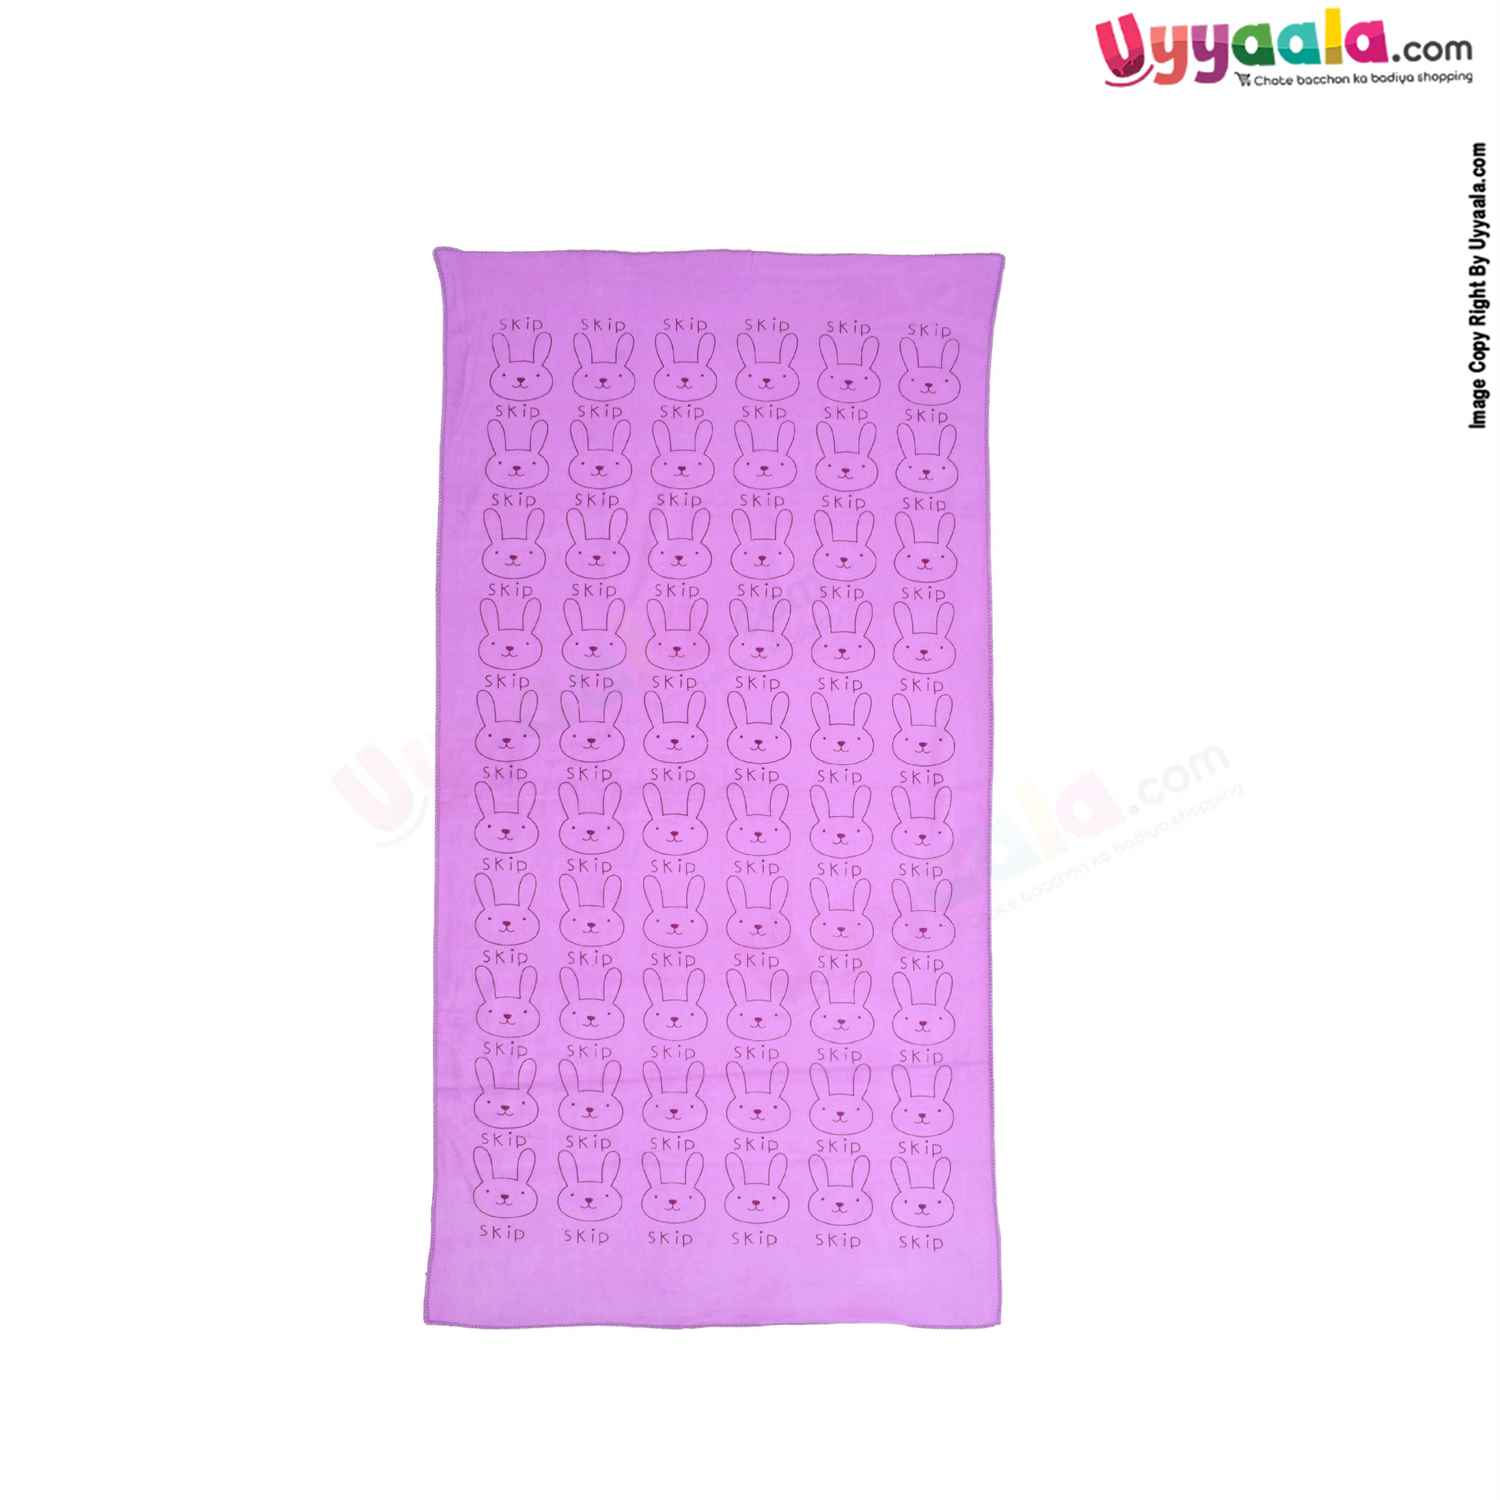 Soft Terry Bath Towel Premium with Rabbit Print for Babies 0-36m Age, Size (143*75cm)- Purple